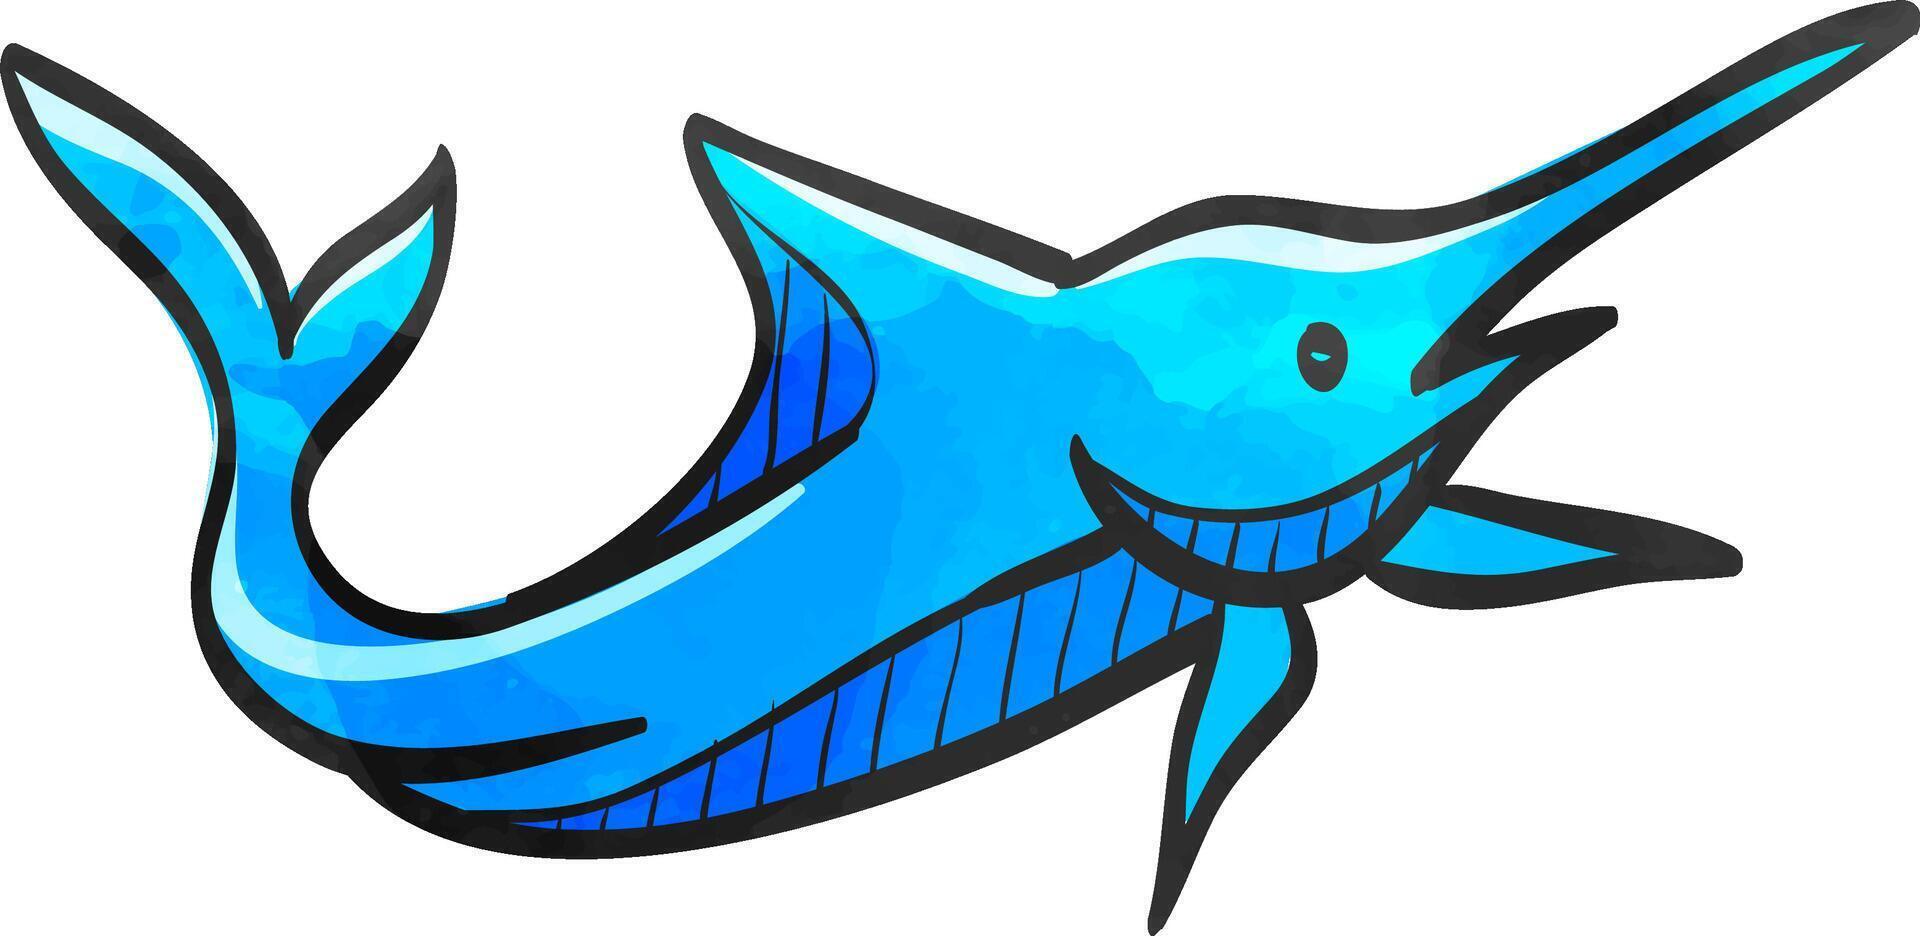 Marlin fish icon in color drawing. Sea creature animal vector